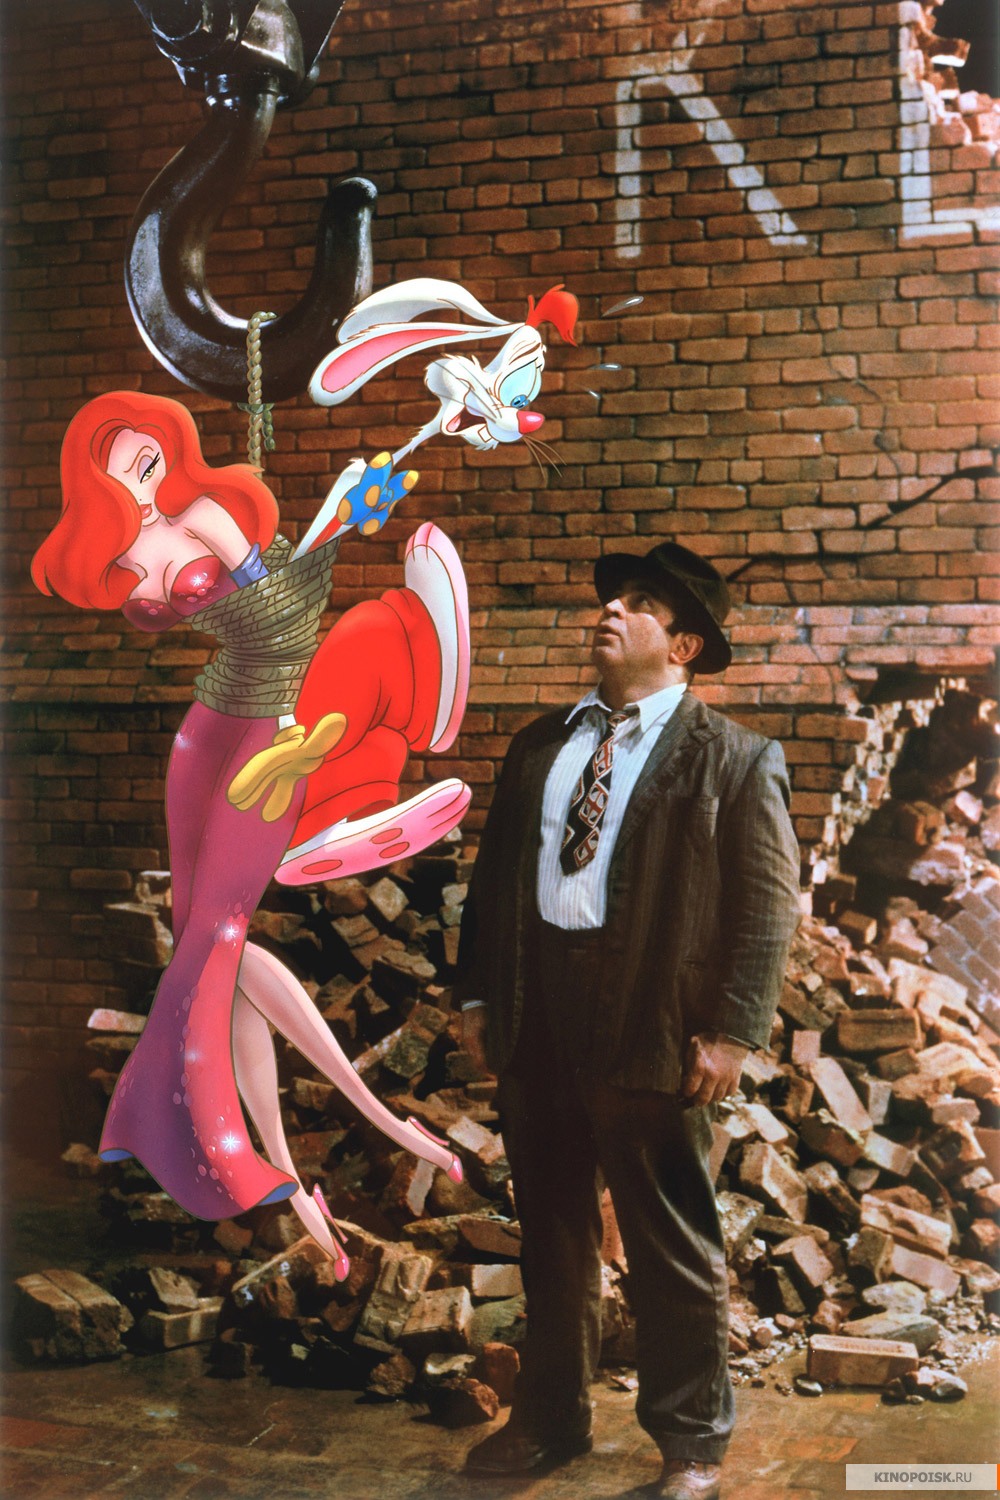 Who Framed Roger Rabbit? Movie Moments Pinterest